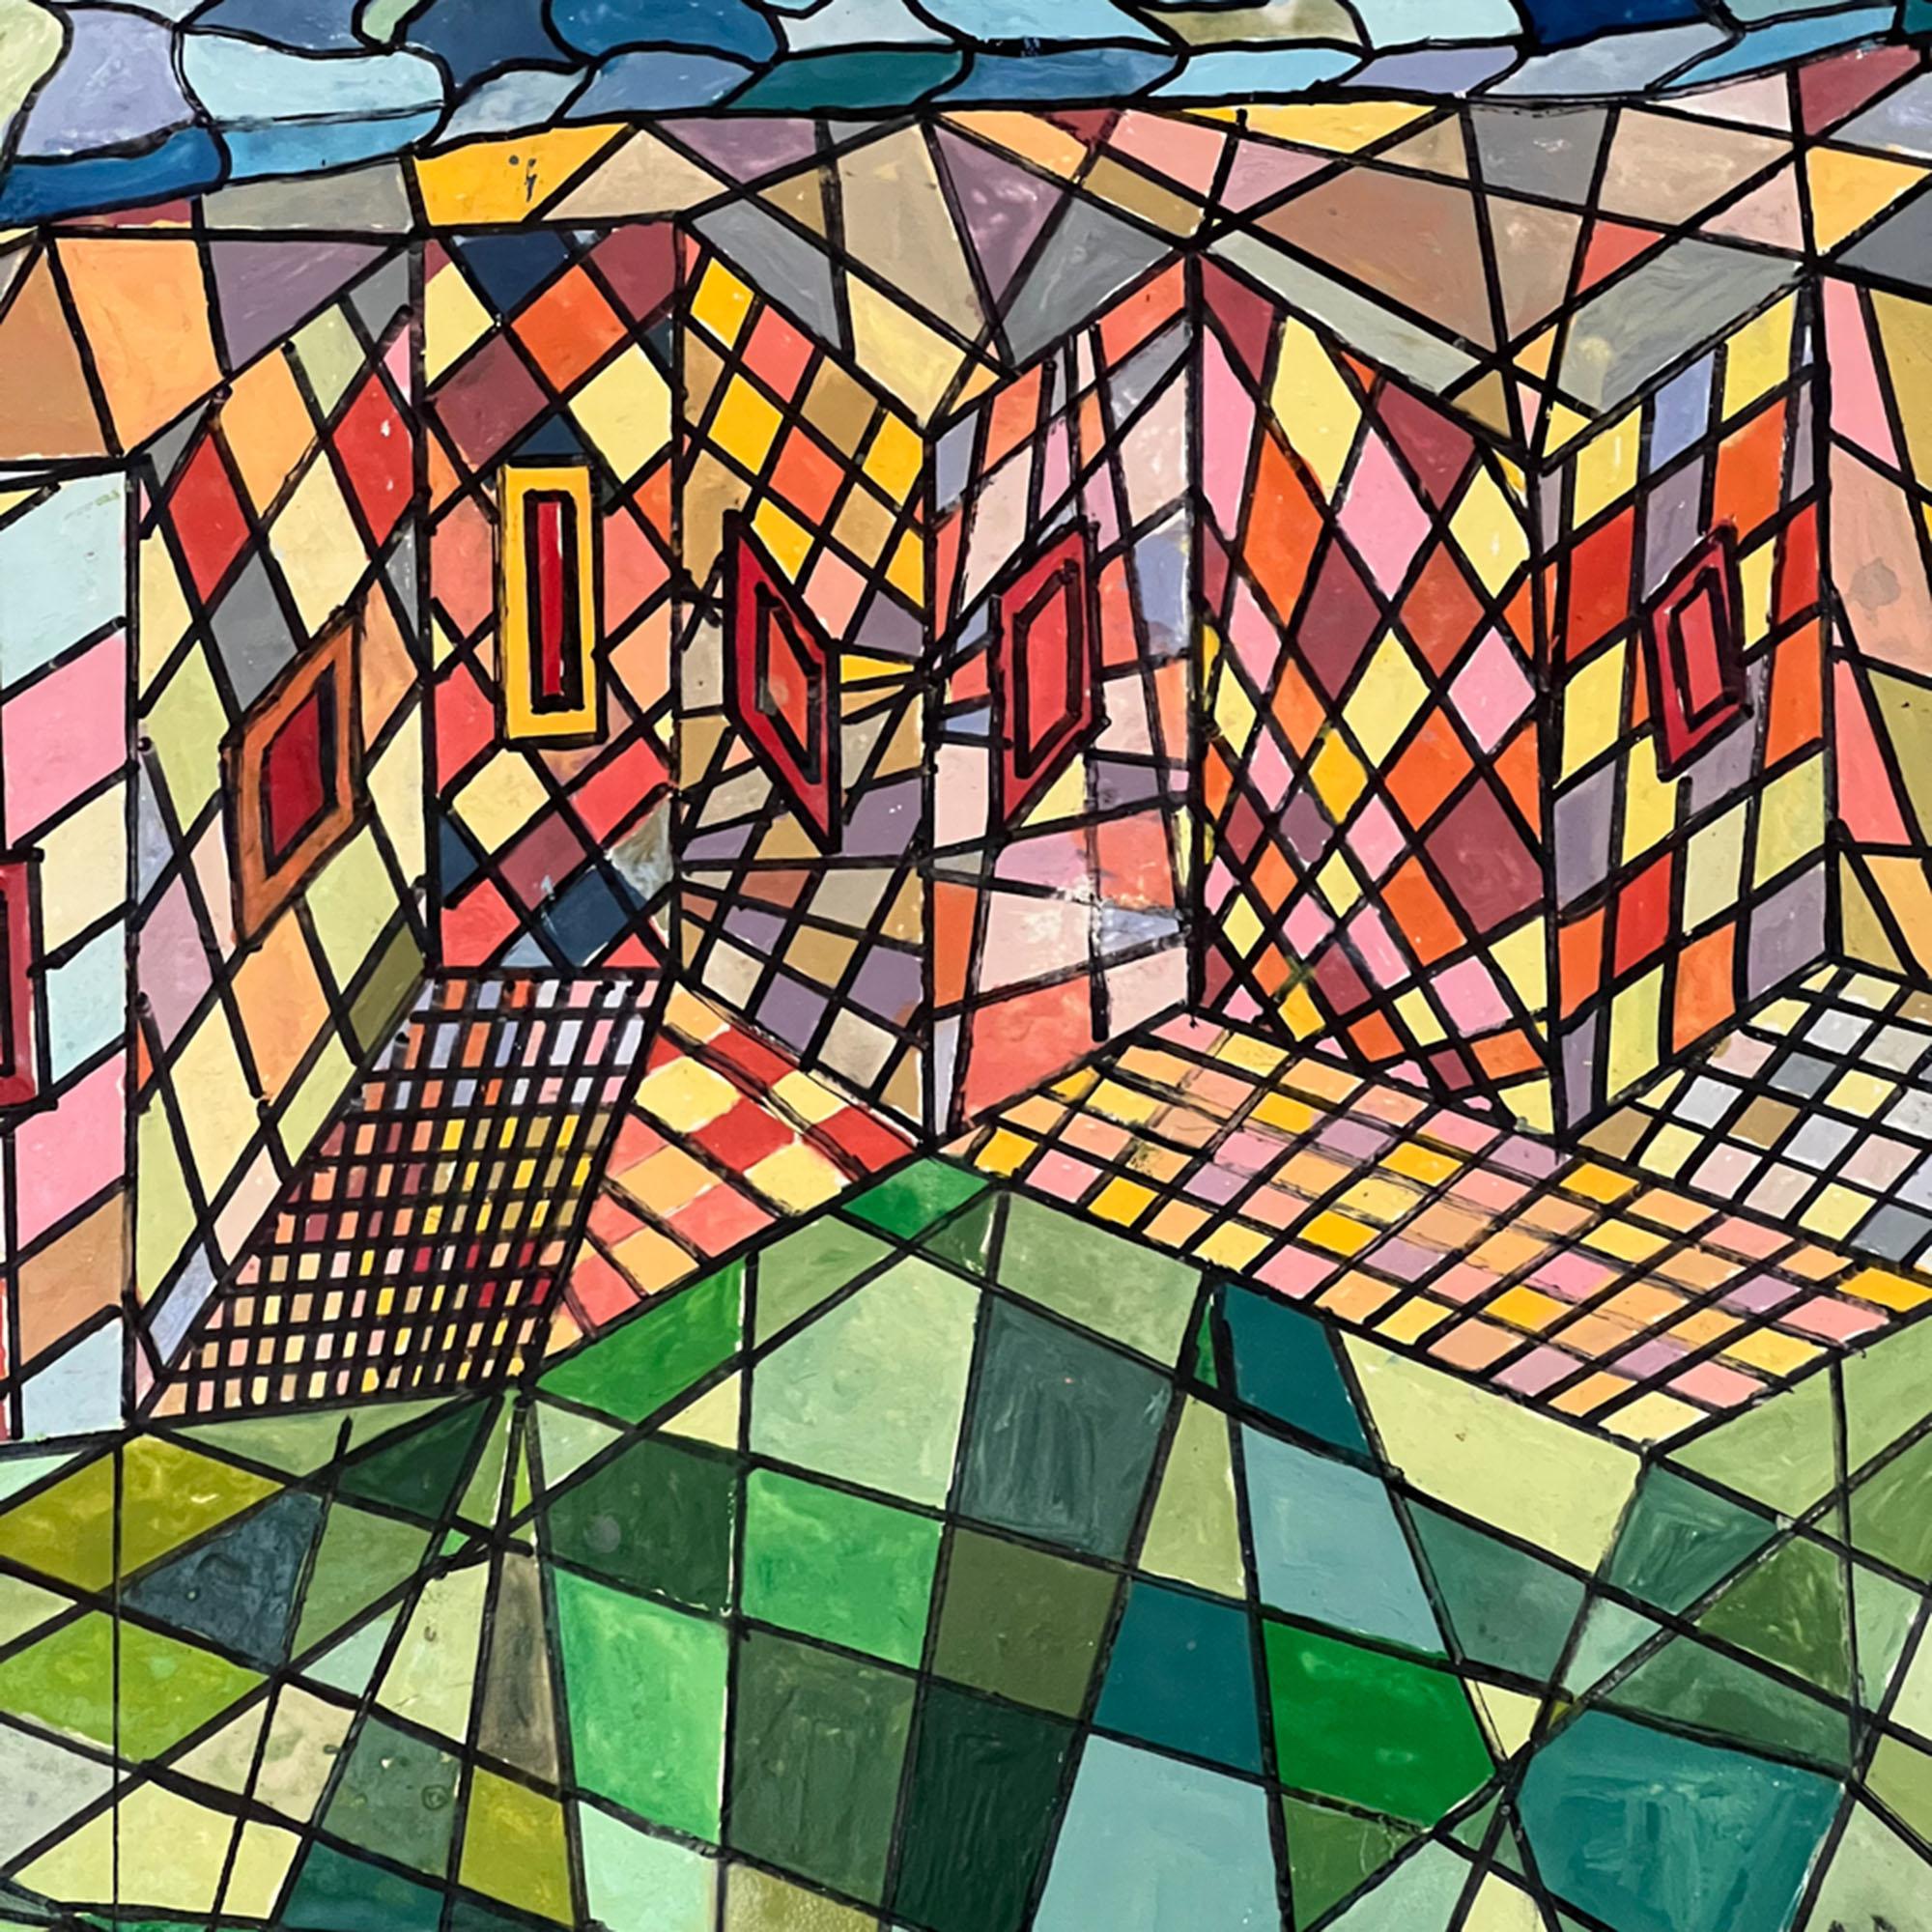 Dieses farbenfrohe Gemälde zeigt eine abstrakte Dorfszene im geometrischen Stil.

Der elegante 